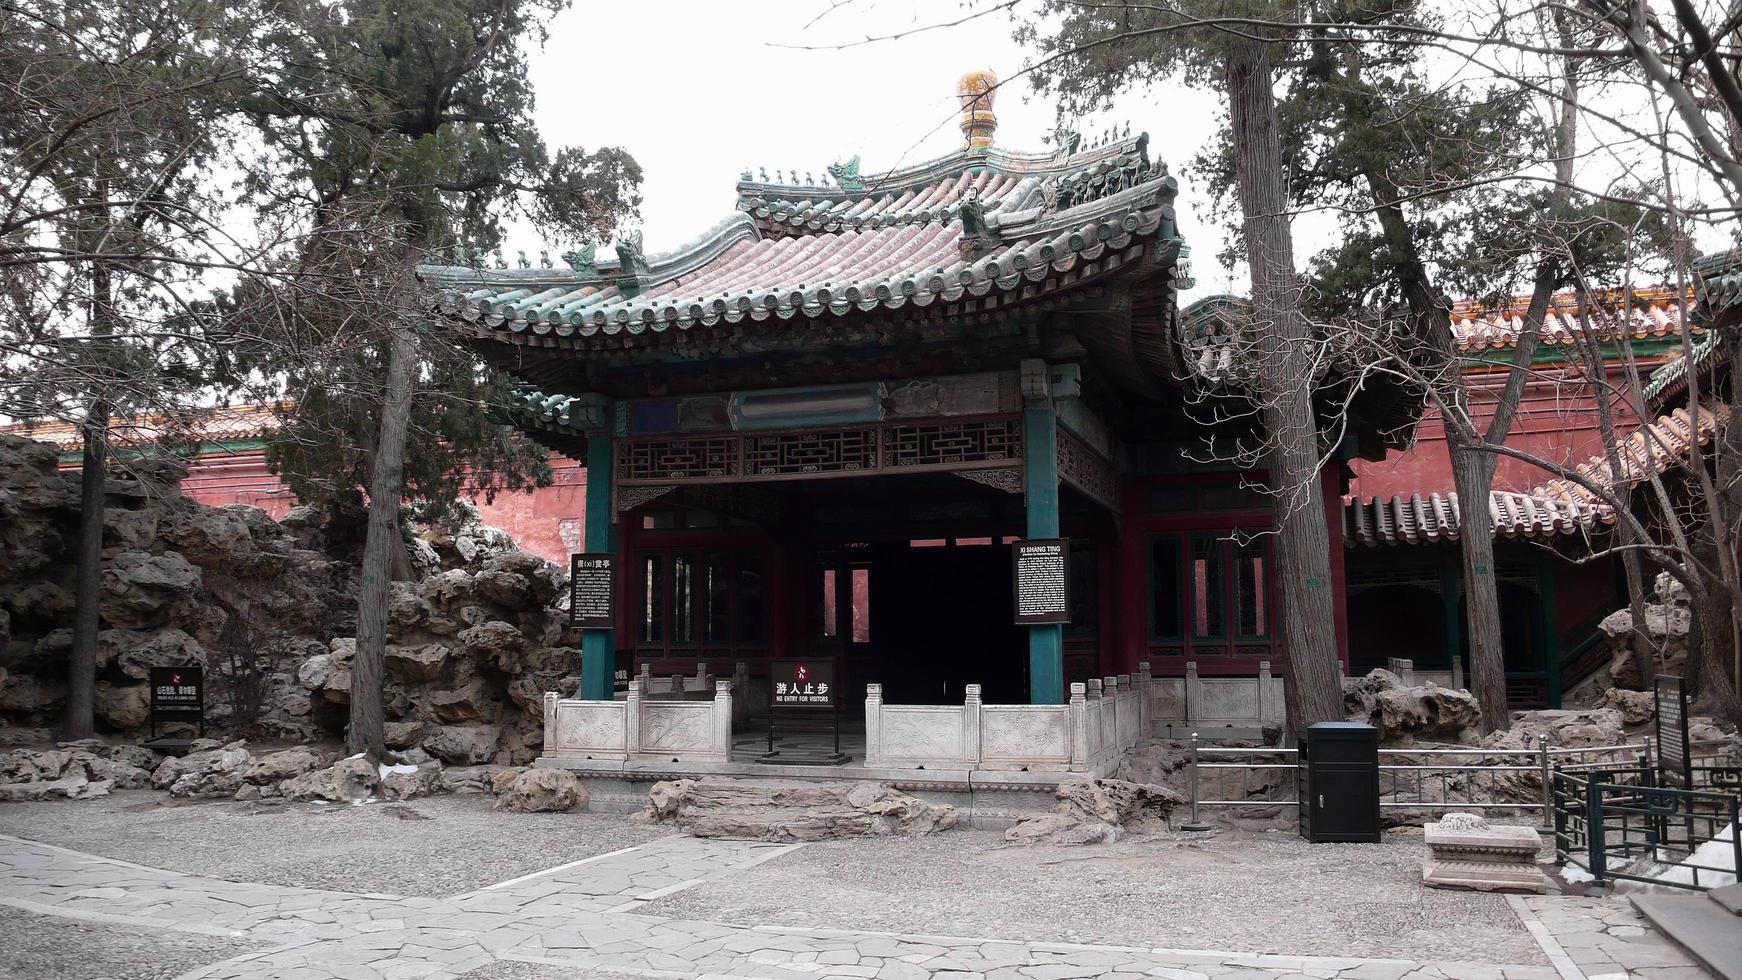 la cour devant la maison d'été traditionnelle de l'empereur chinois photo